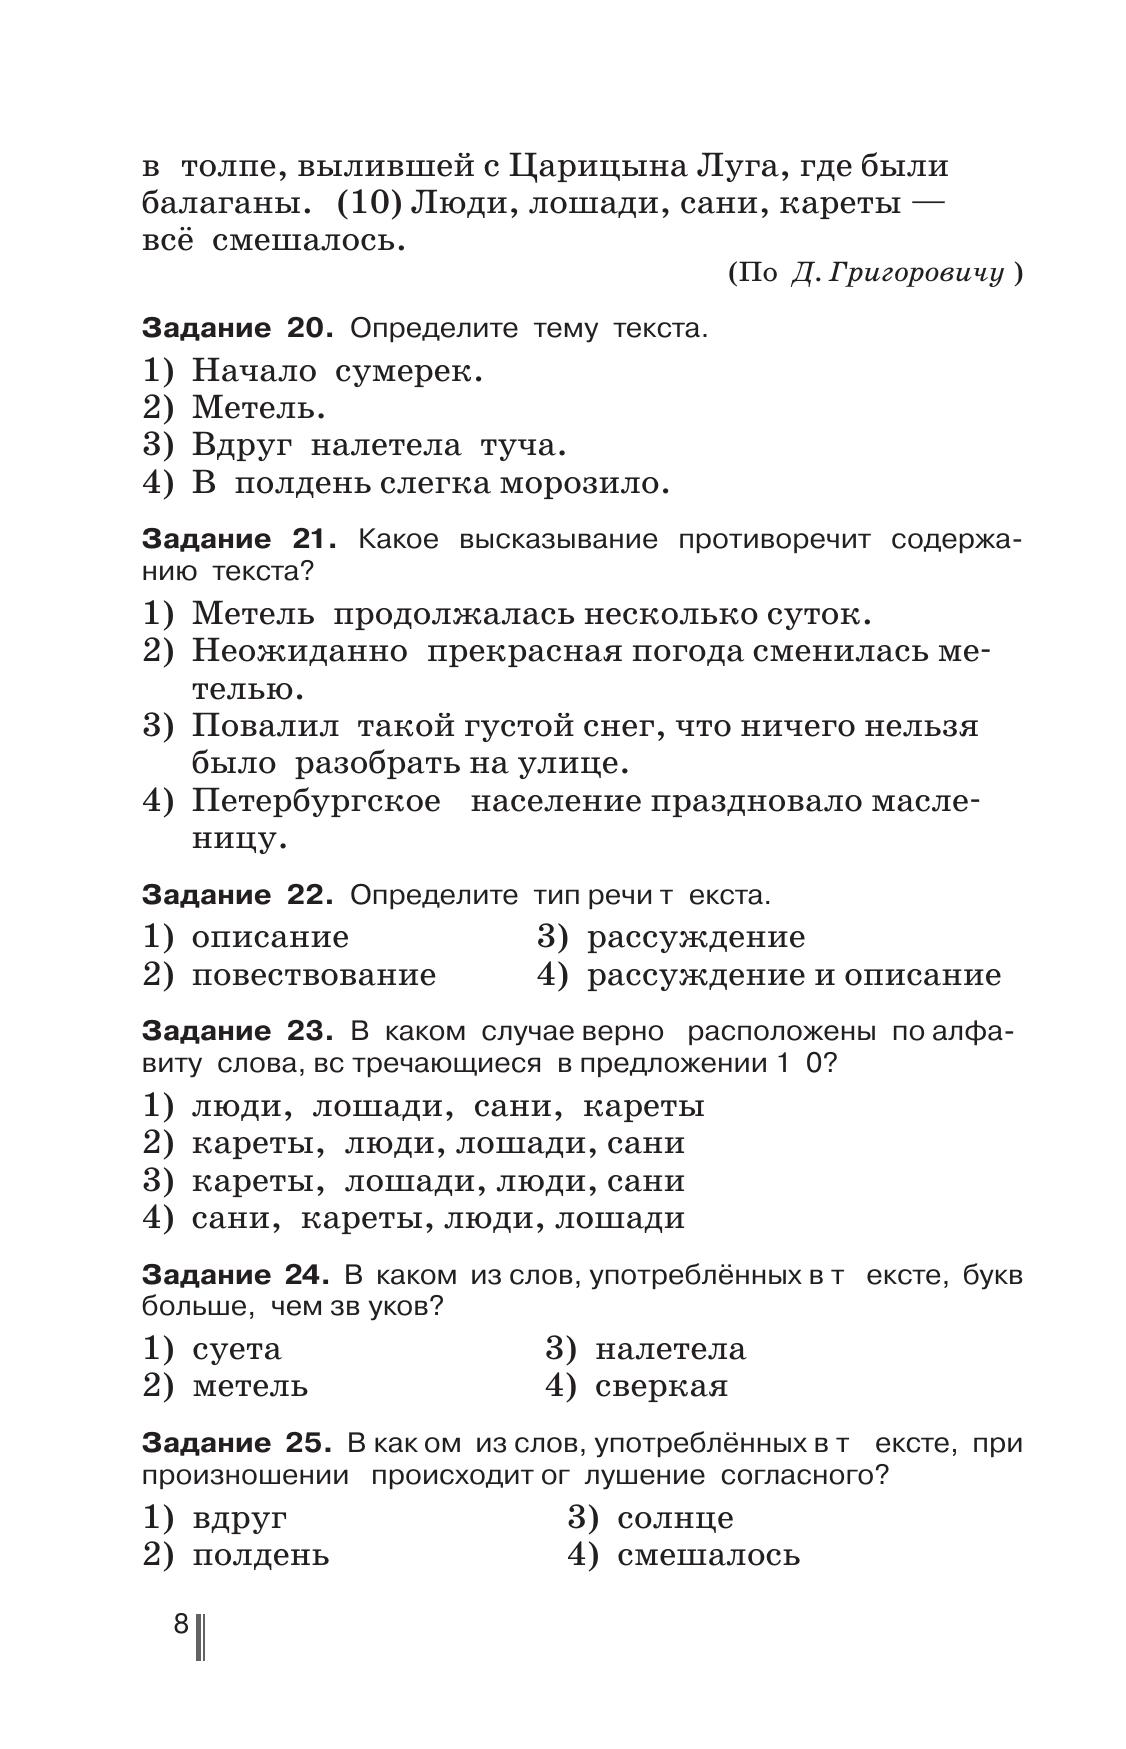 Русский язык. Готовимся к ГИА. Тесты, творческие работы, проекты. 5 класс 8